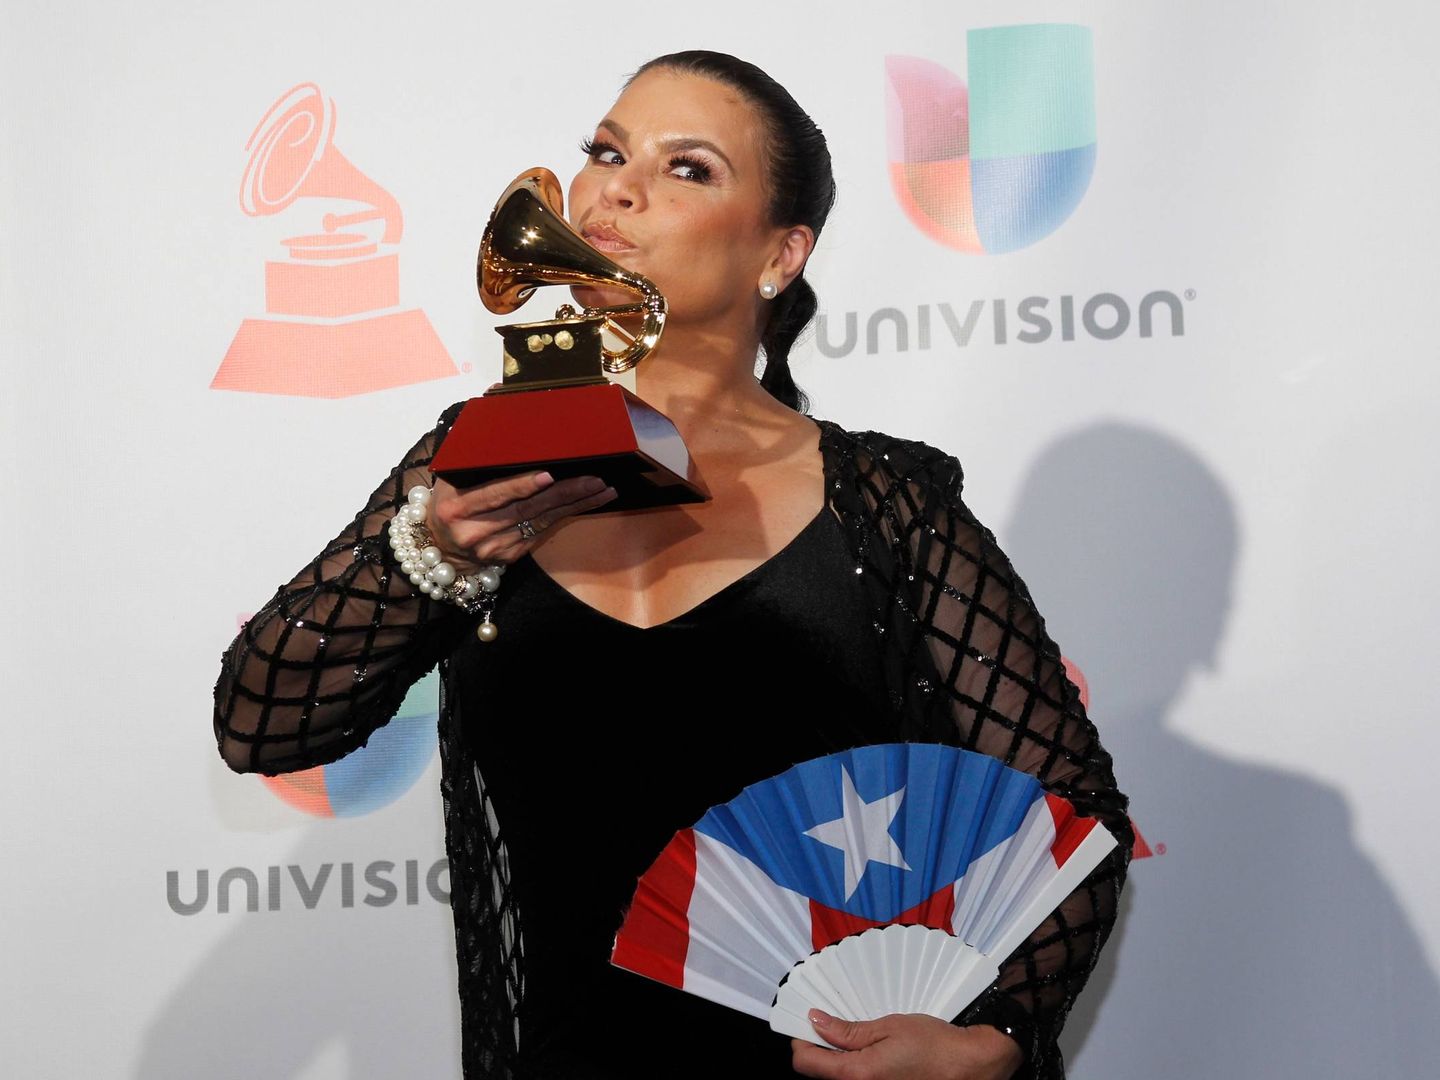 La cantante Olga Tañón con uno de sus Grammy Latino. (Gtres)